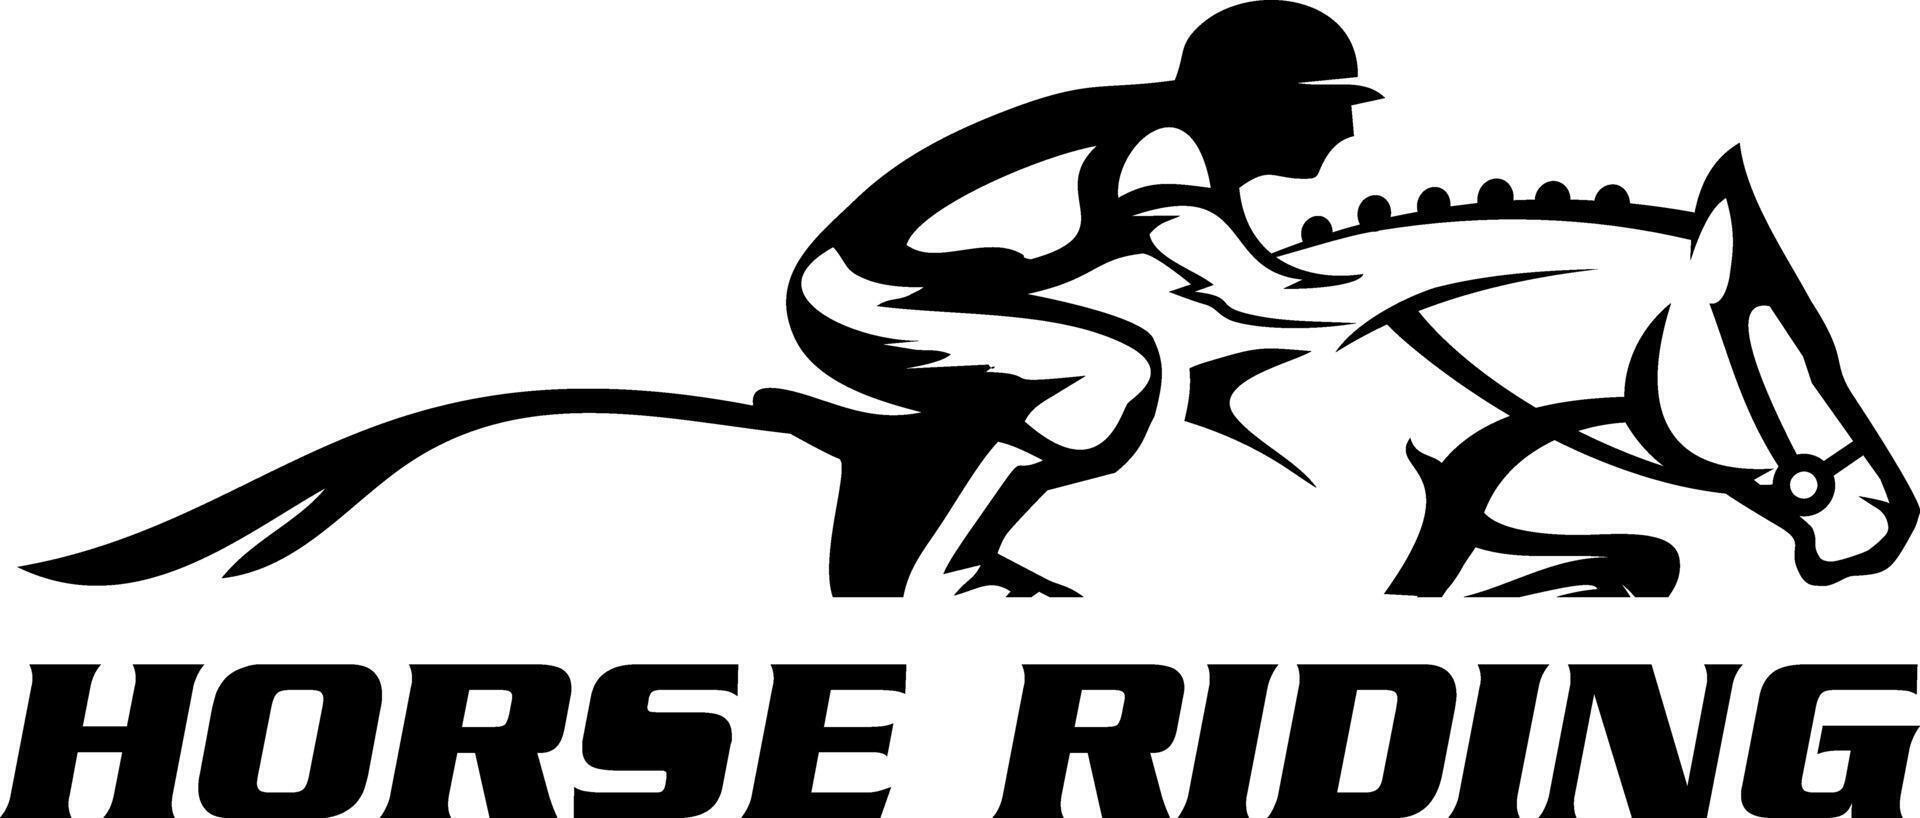 horse racing idea vector logo design